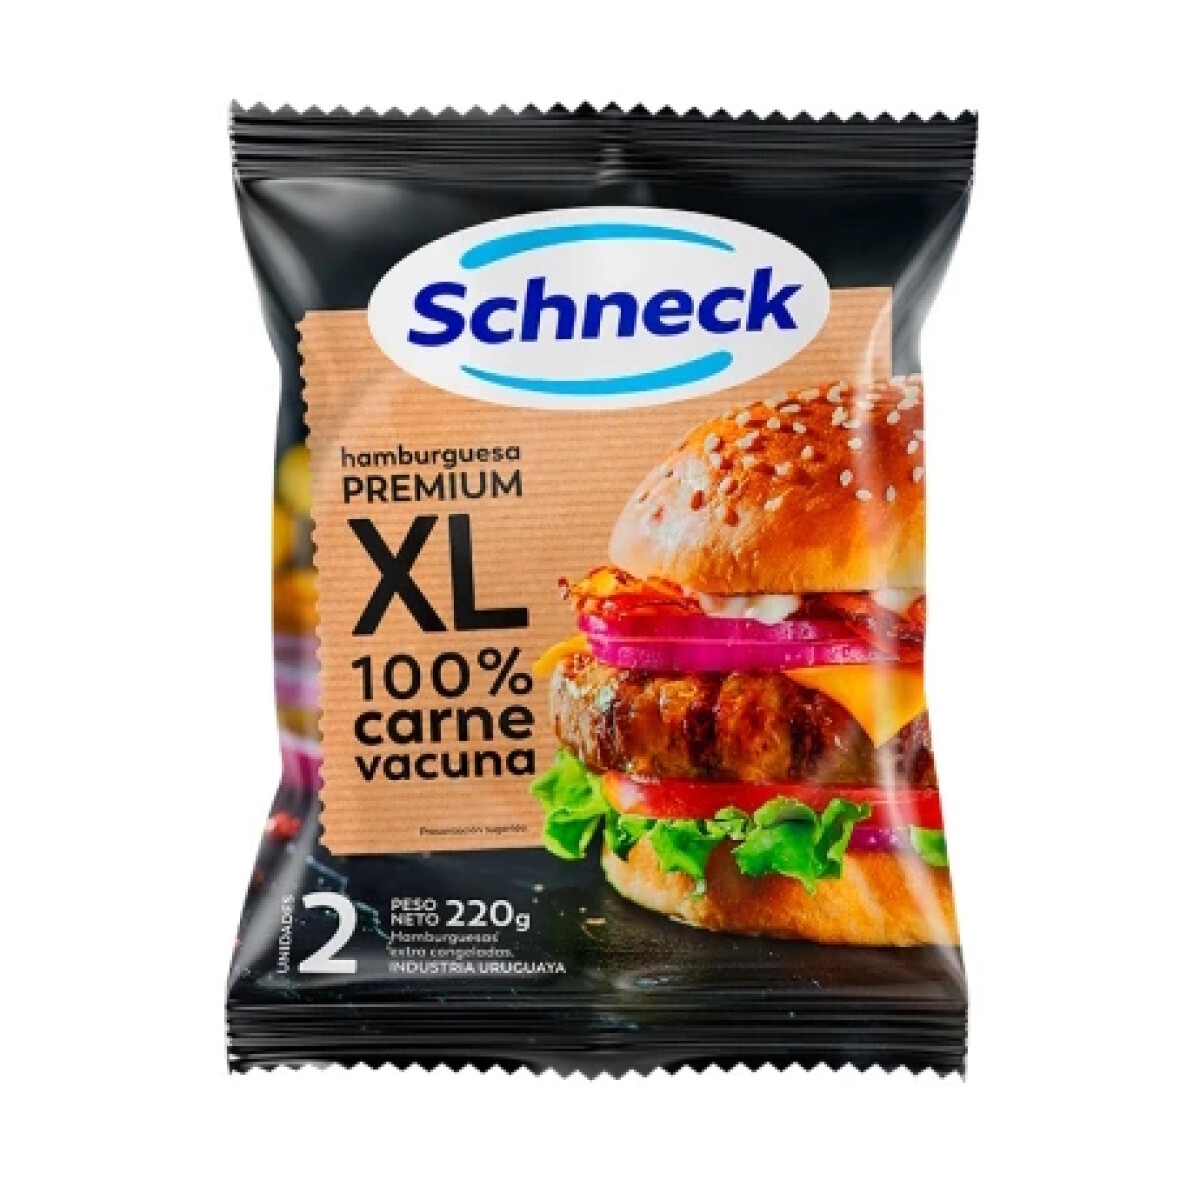 Hamburguesas Premium XL Schneck 2 Unidades 